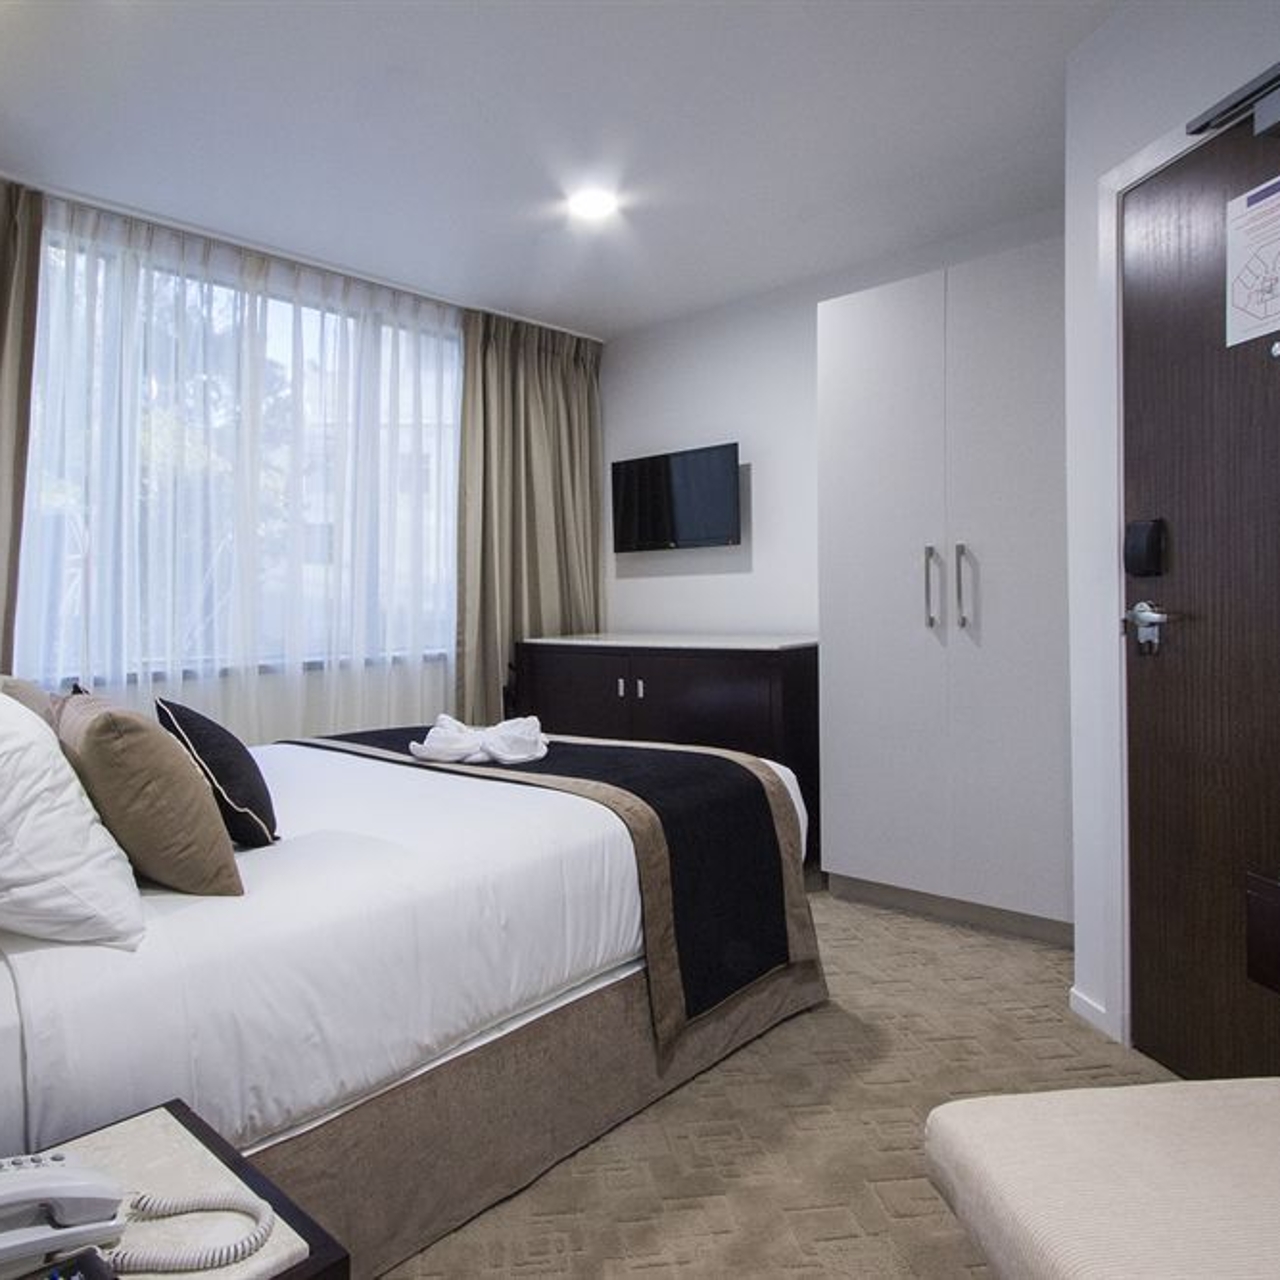 VR Queen Street - Hotel & Suites en Auckland en HRS con servicios gratuitos